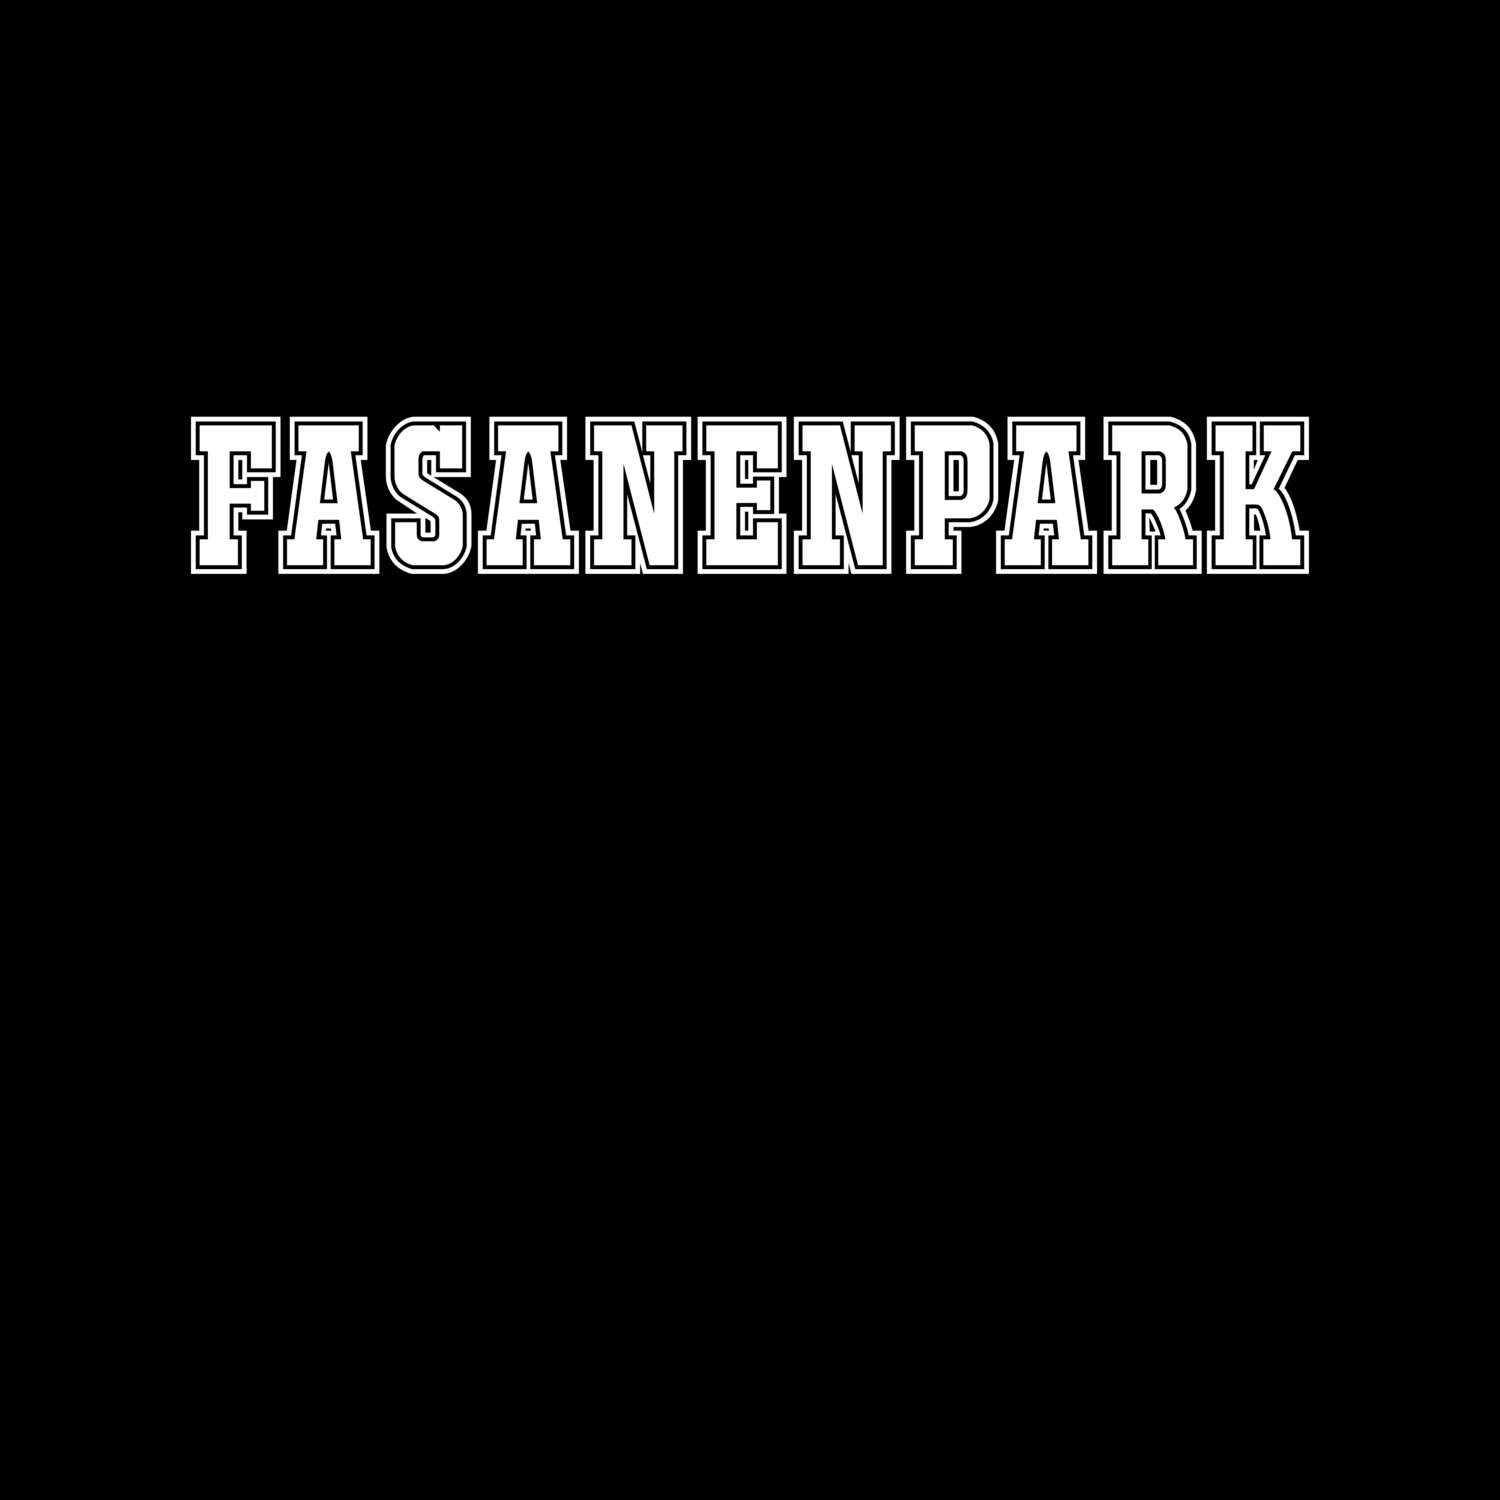 Fasanenpark T-Shirt »Classic«